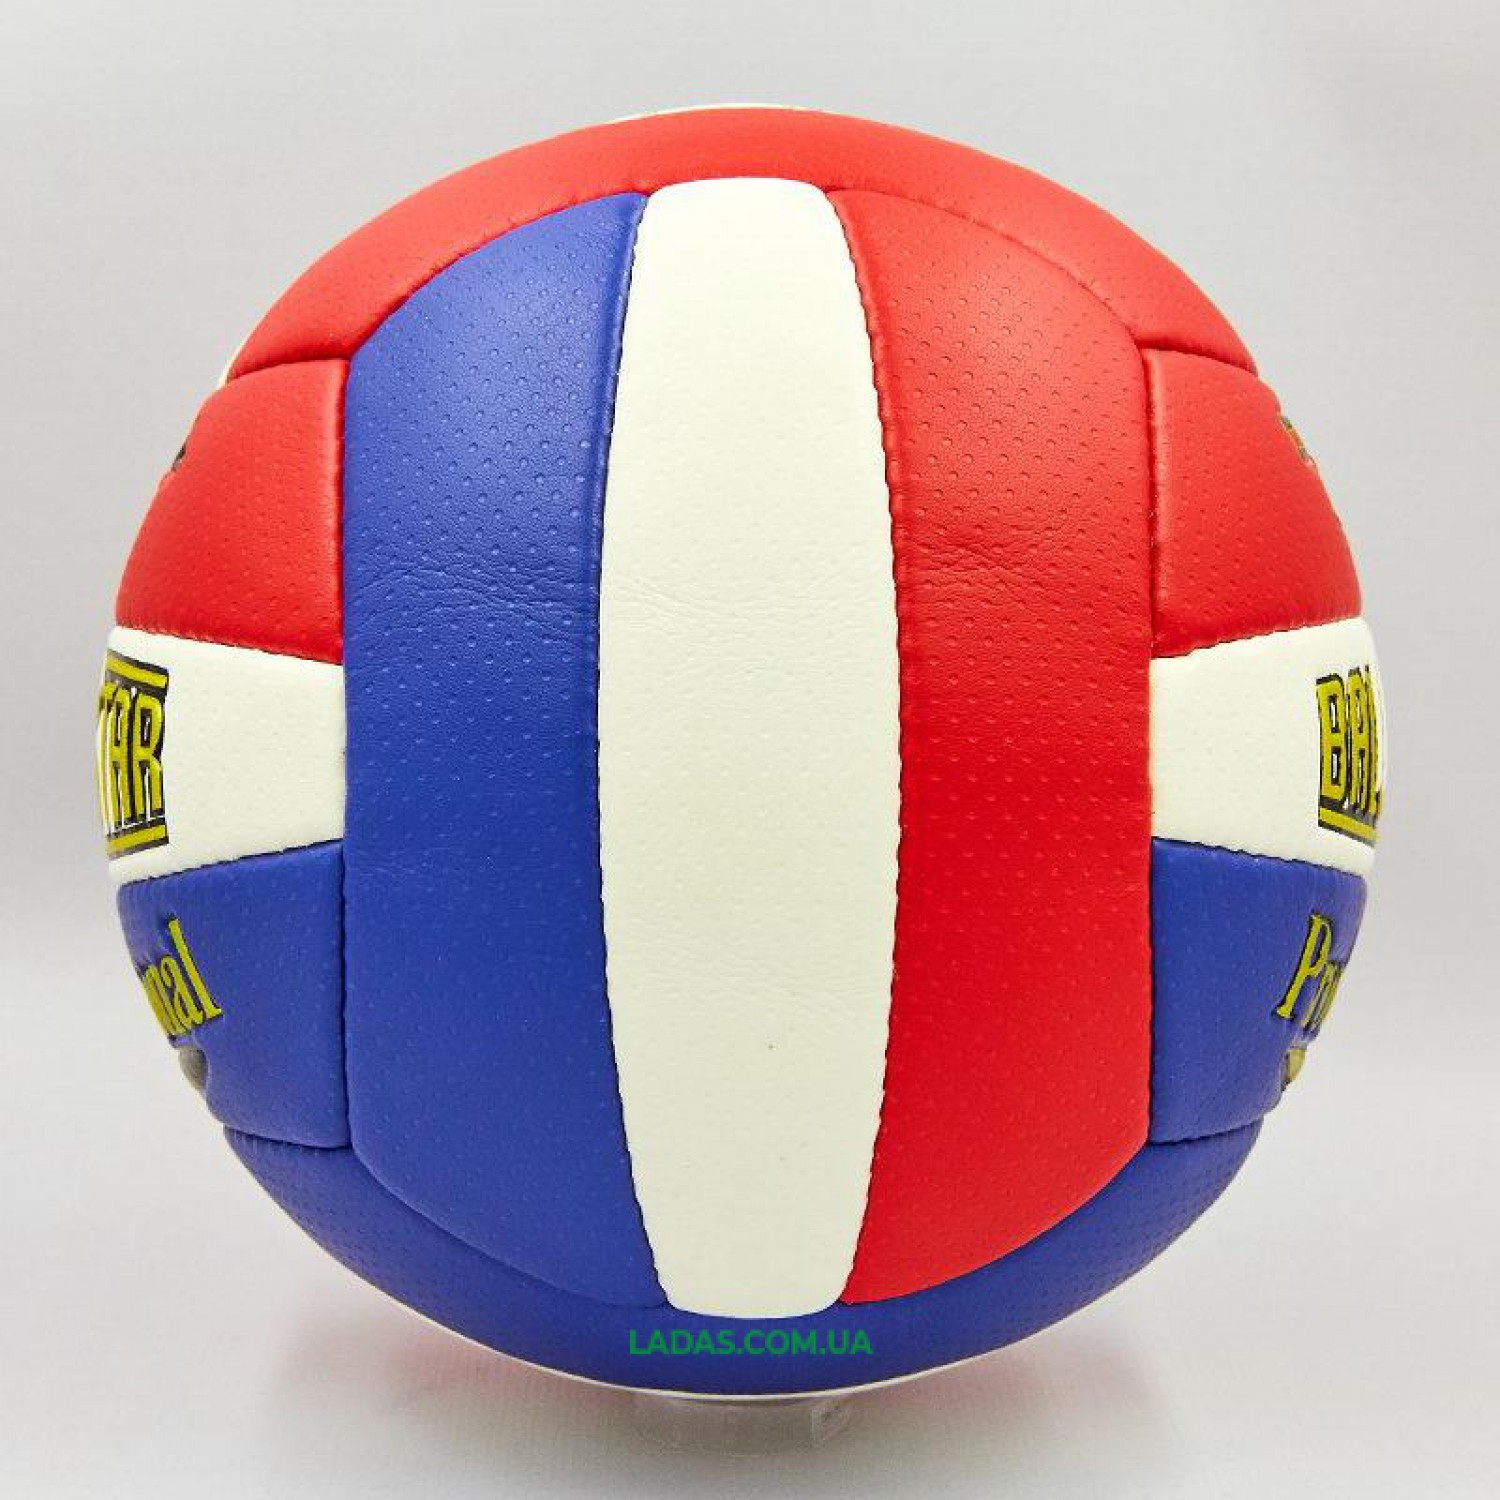 Мяч волейбольный PU BALLONSTAR (PU, №5, 3 слоя, сшит вручную)